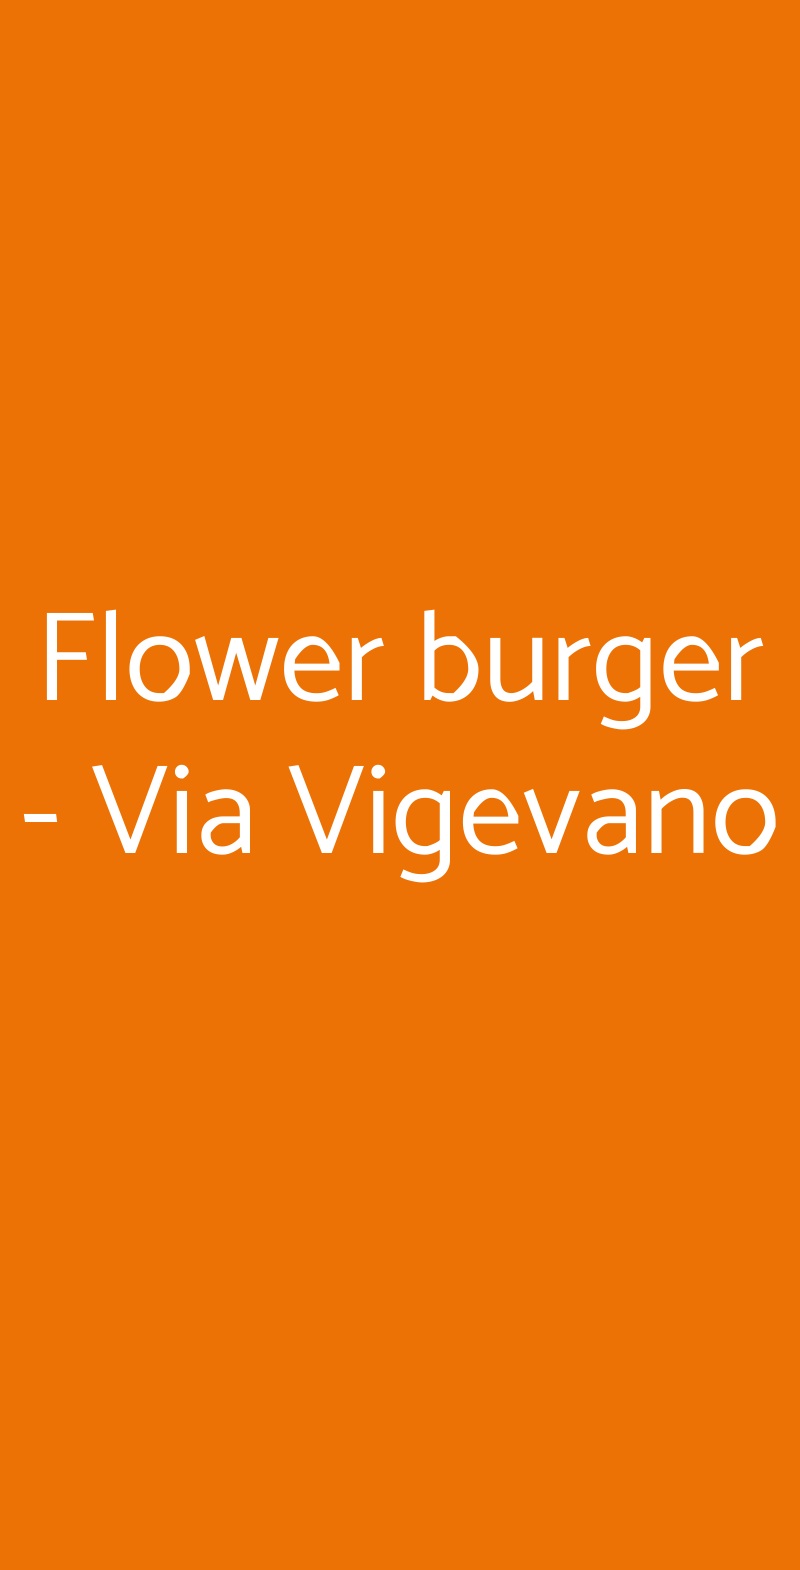 Flower burger - Via Vigevano Milano menù 1 pagina